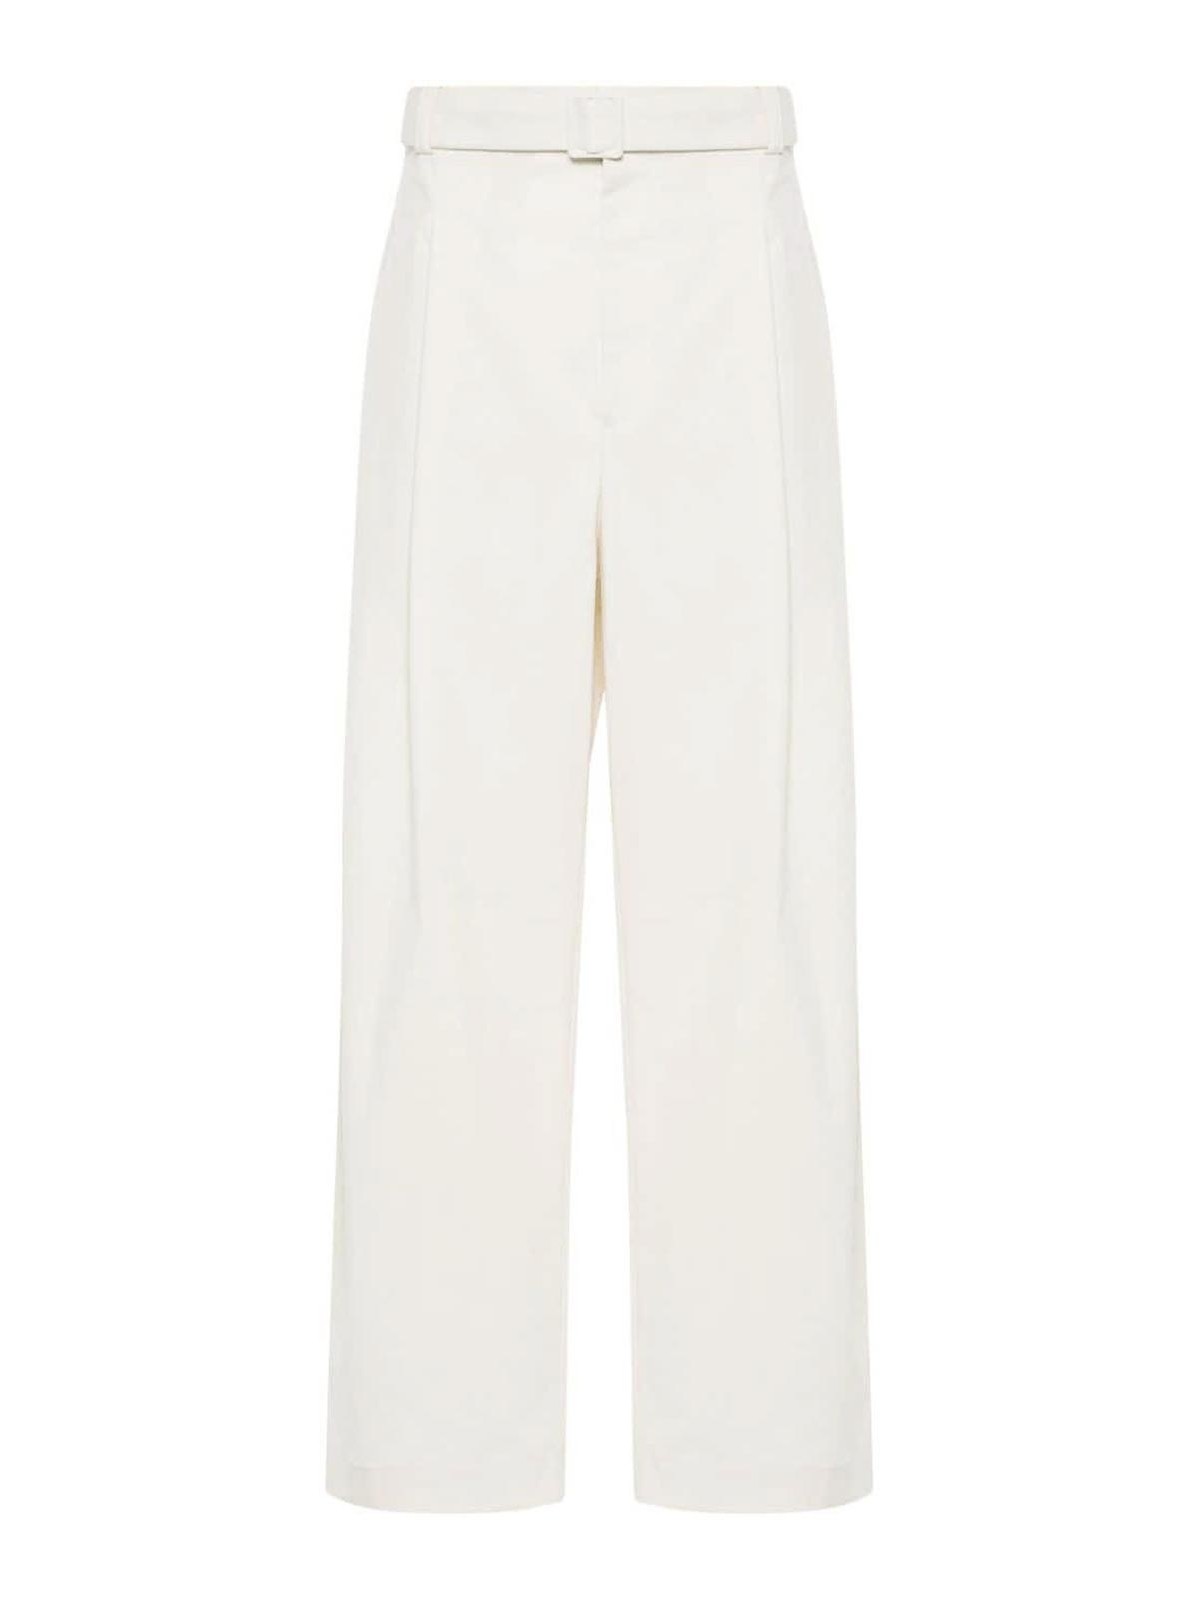 Armani Collezioni Cotton Blend Wide Leg Trousers In White